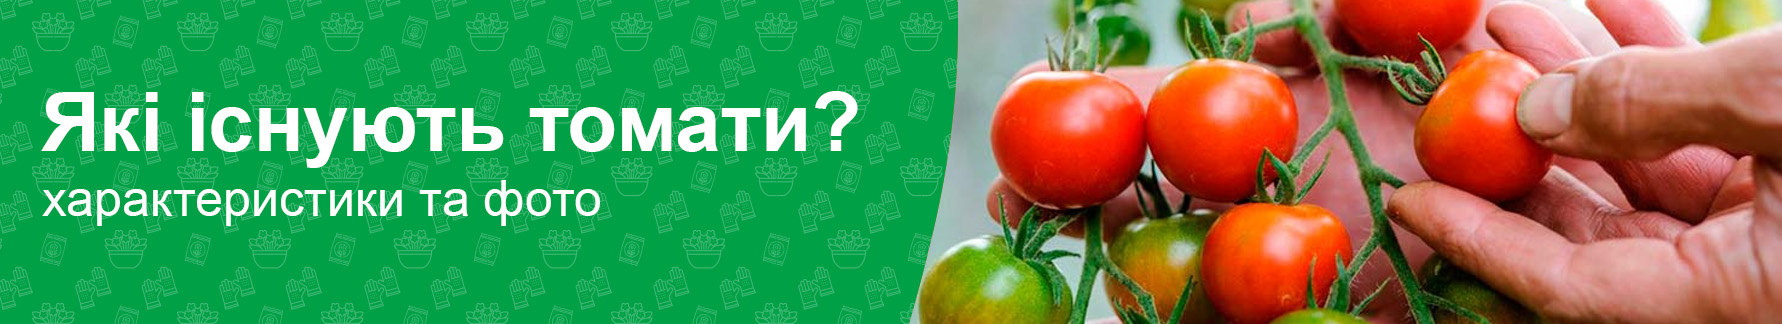 Какие бывают помидоры (томаты), характеристики, какие лучше?